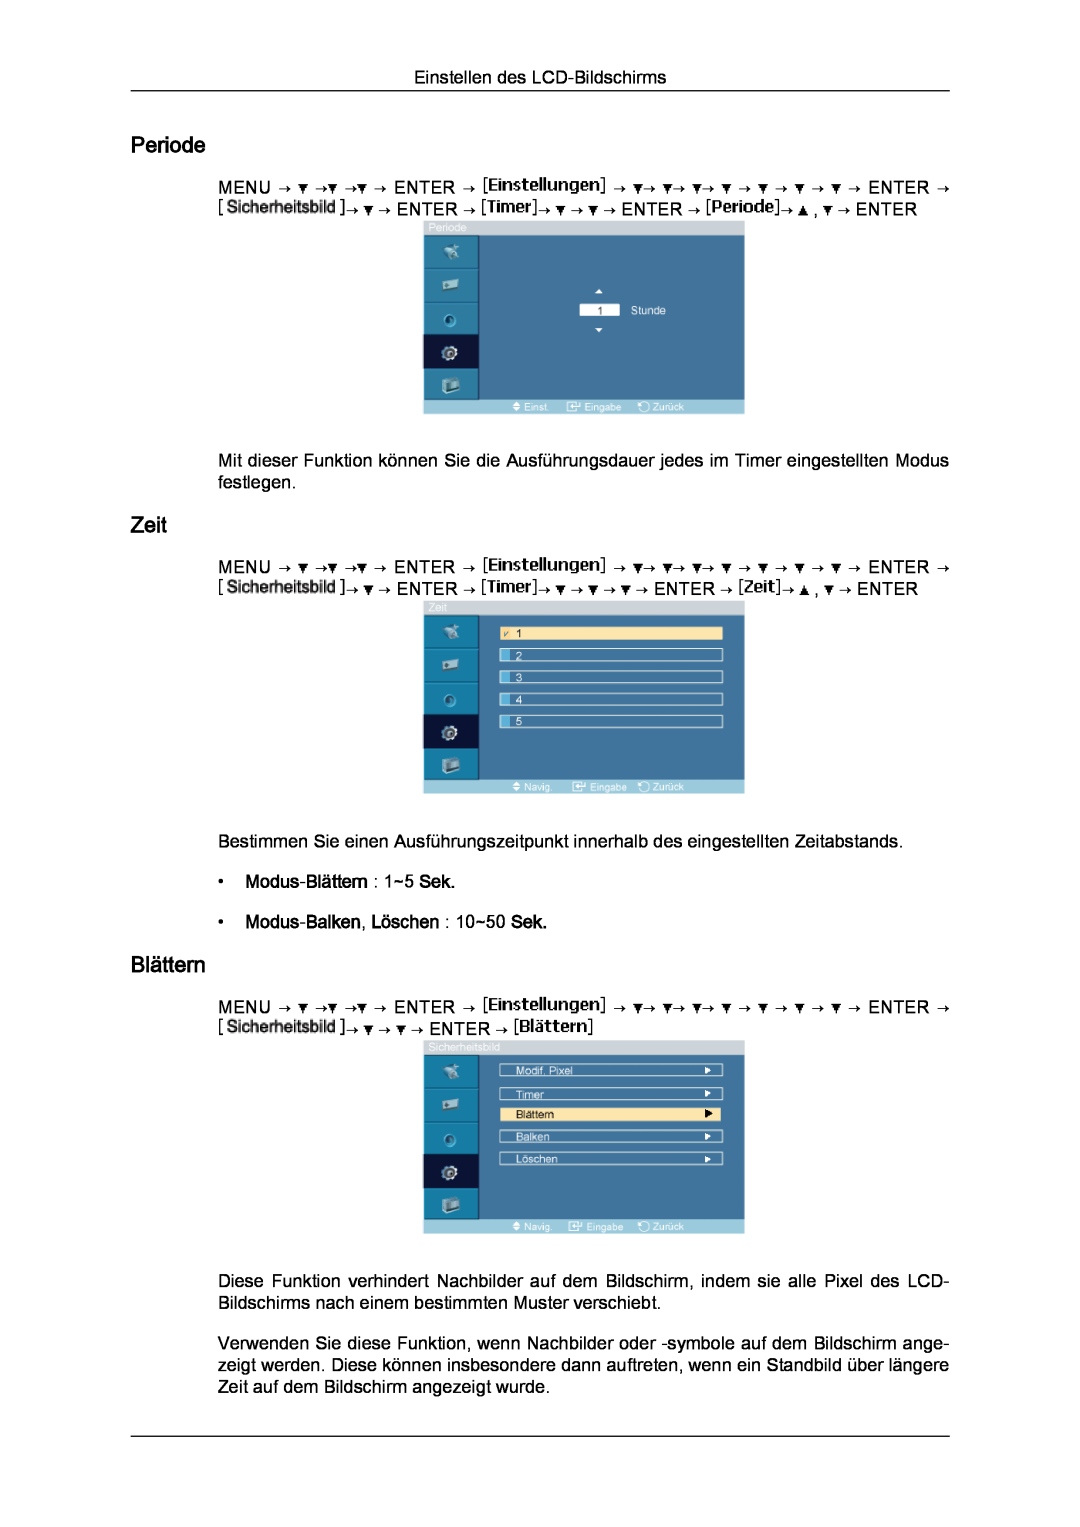 Samsung LH23PTSMBC/EN, LH23PTRMBC/EN manual Periode, Modus-Blättern 1~5 Sek Modus-Balken, Löschen 10~50 Sek, Zeit 